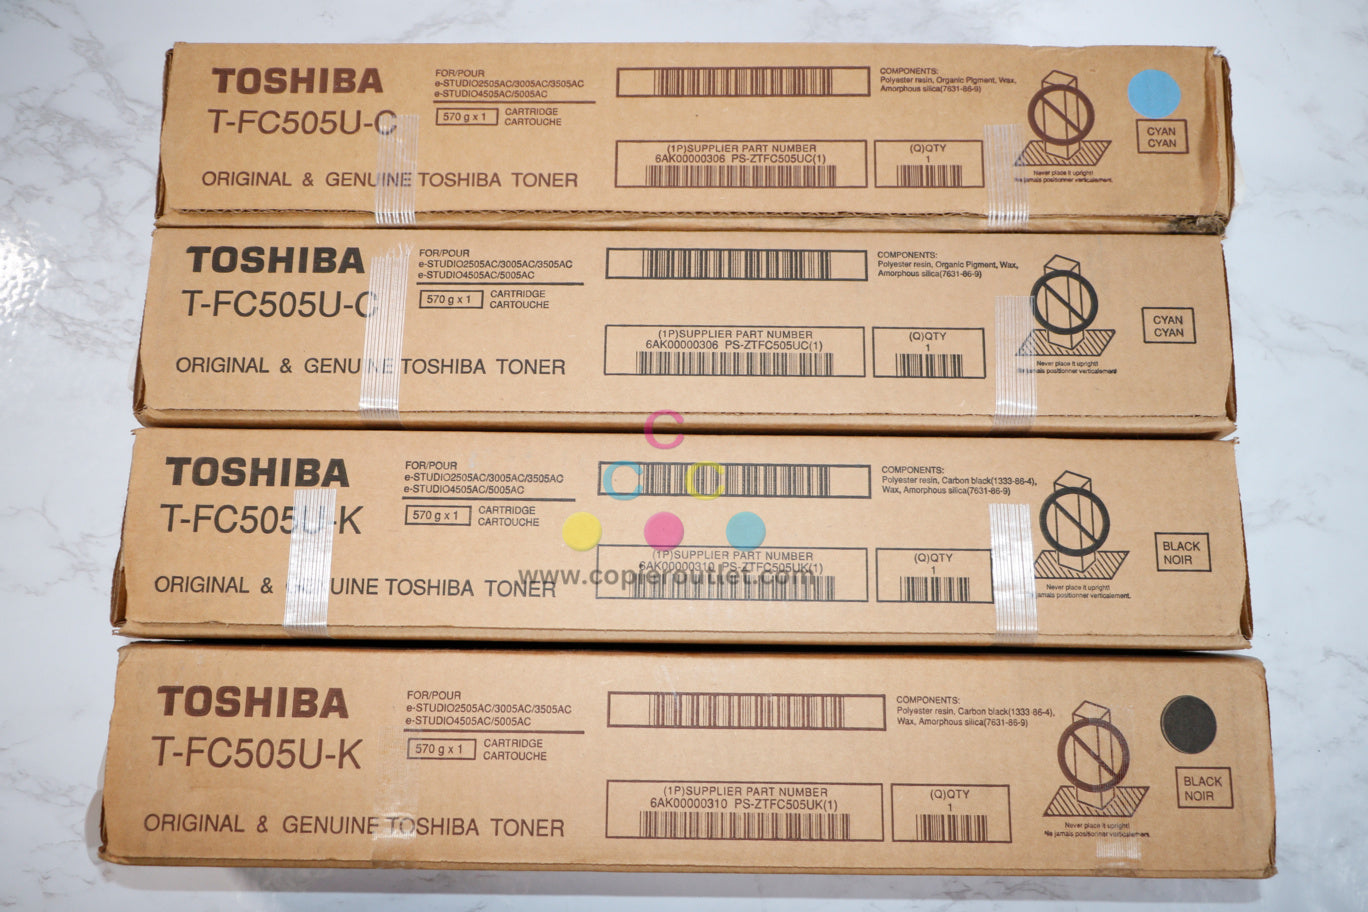 New OEM Toshiba eStudio 2505AC,3005AC CCKK Toners T-FC505U-C (x2),T-FC505U-K(x2)